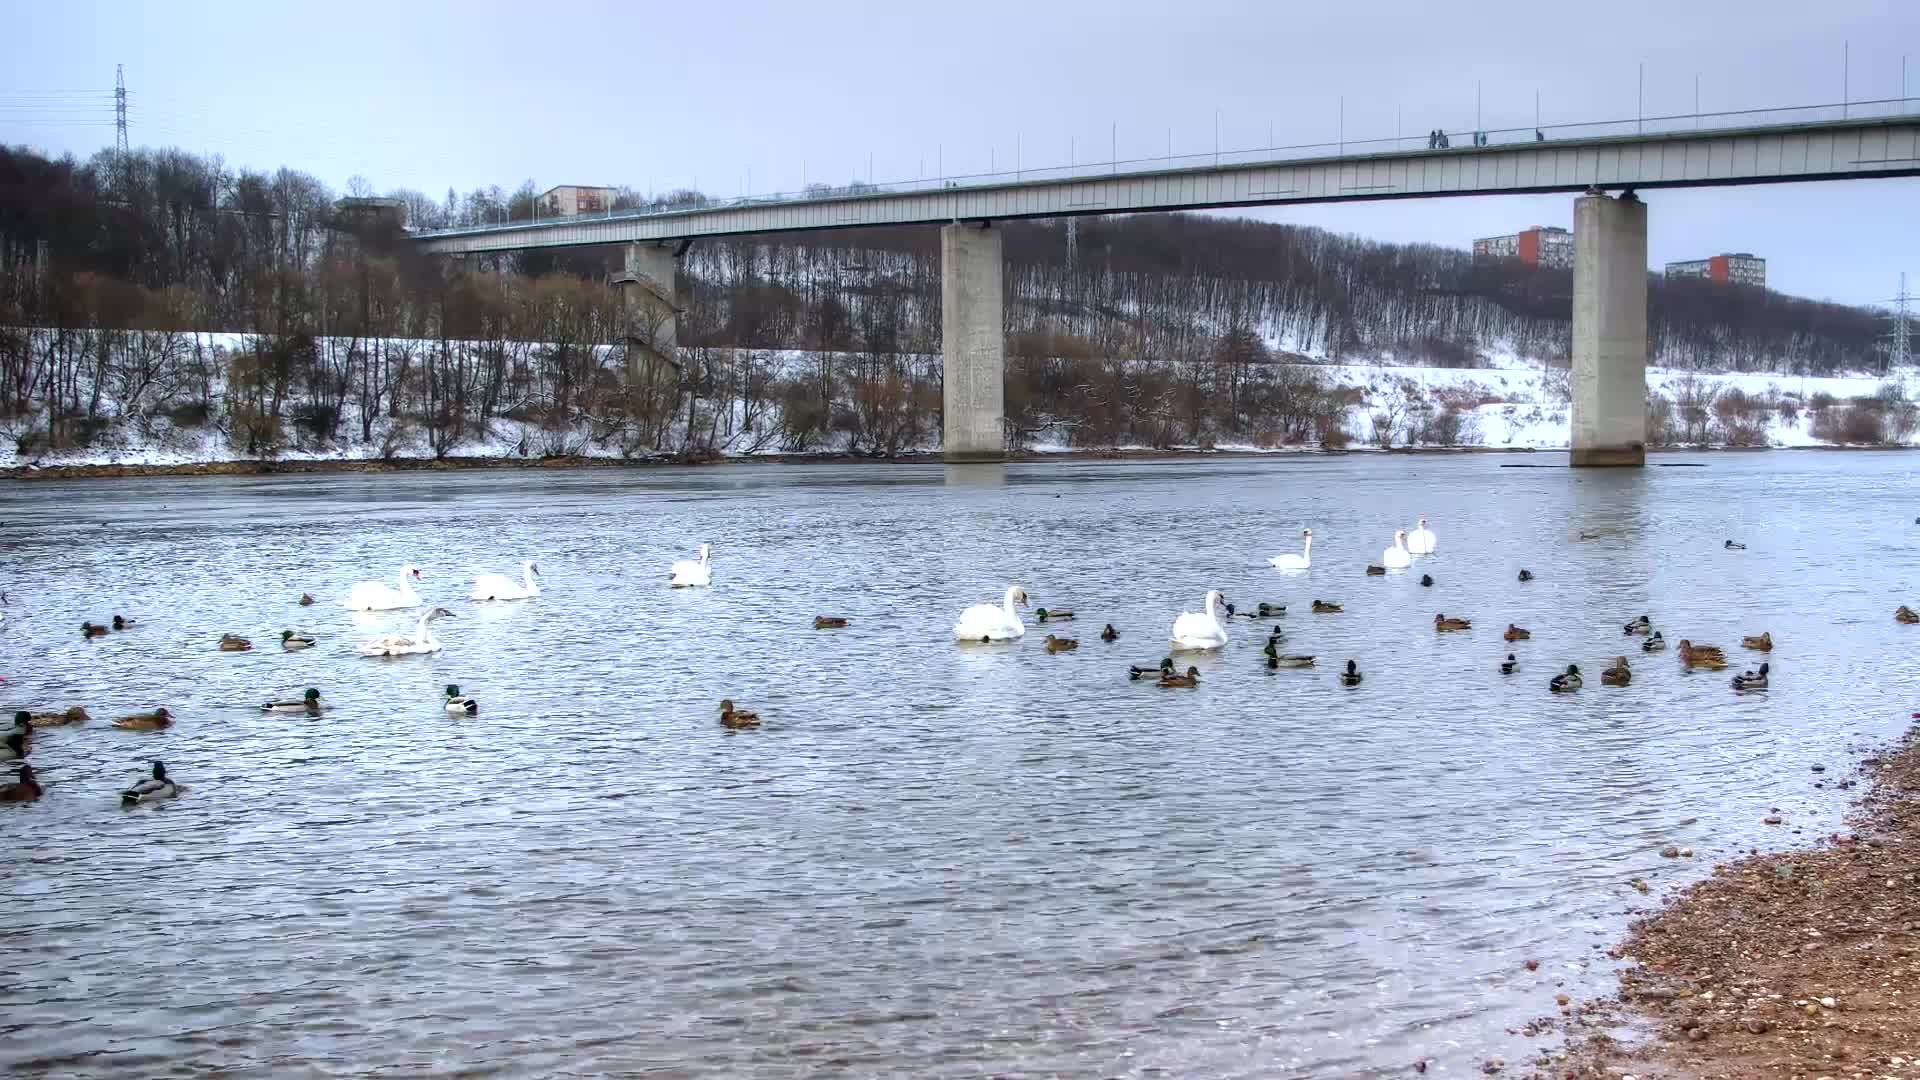 Panemune Bridge - Fun - Videotime.com